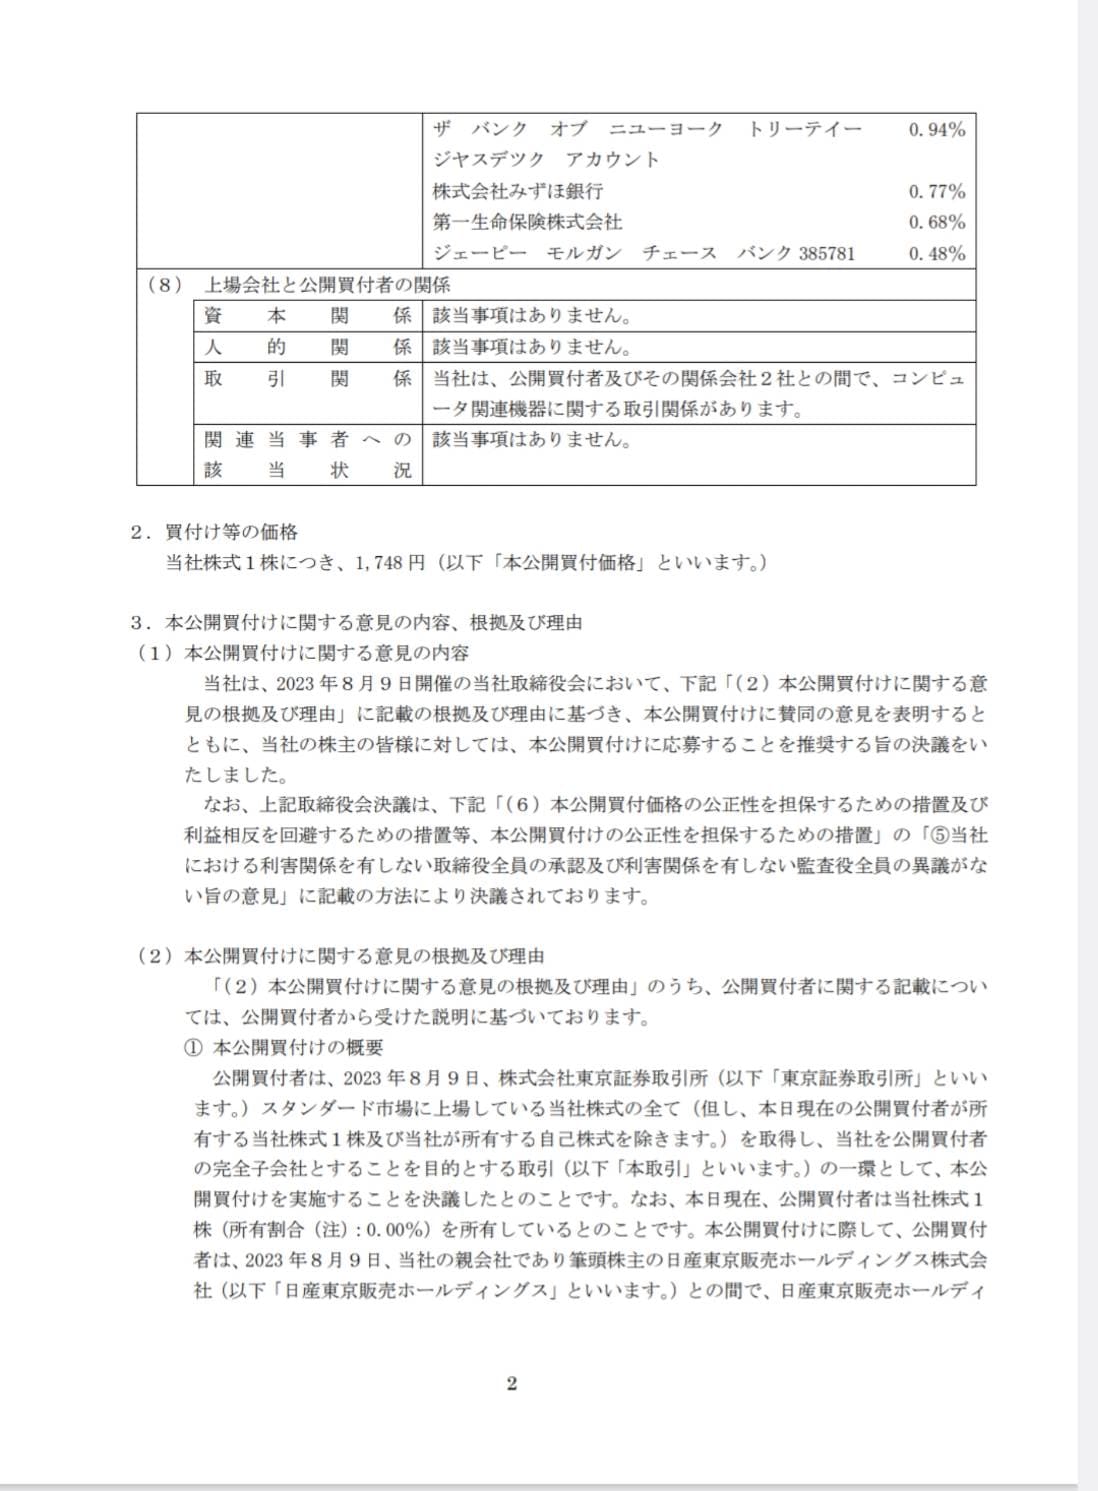 2023年8月9日発表東京日産コンピュータシステム公開買い付けに関するお知らせ2